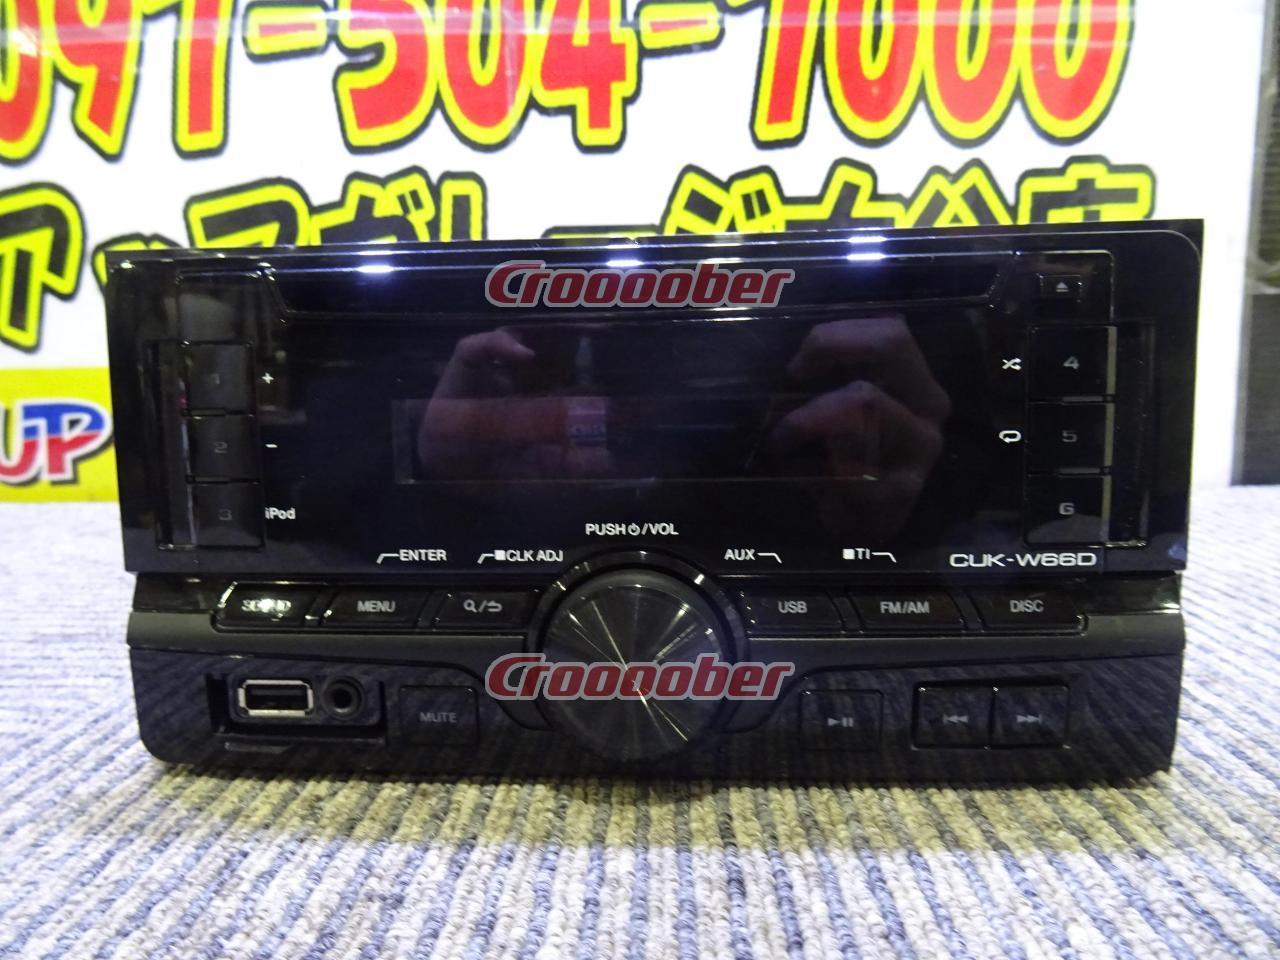 ダイハツ純正(KENWOOD製) CUK-W66D 200mm/CD/USB/AUX/チューナー